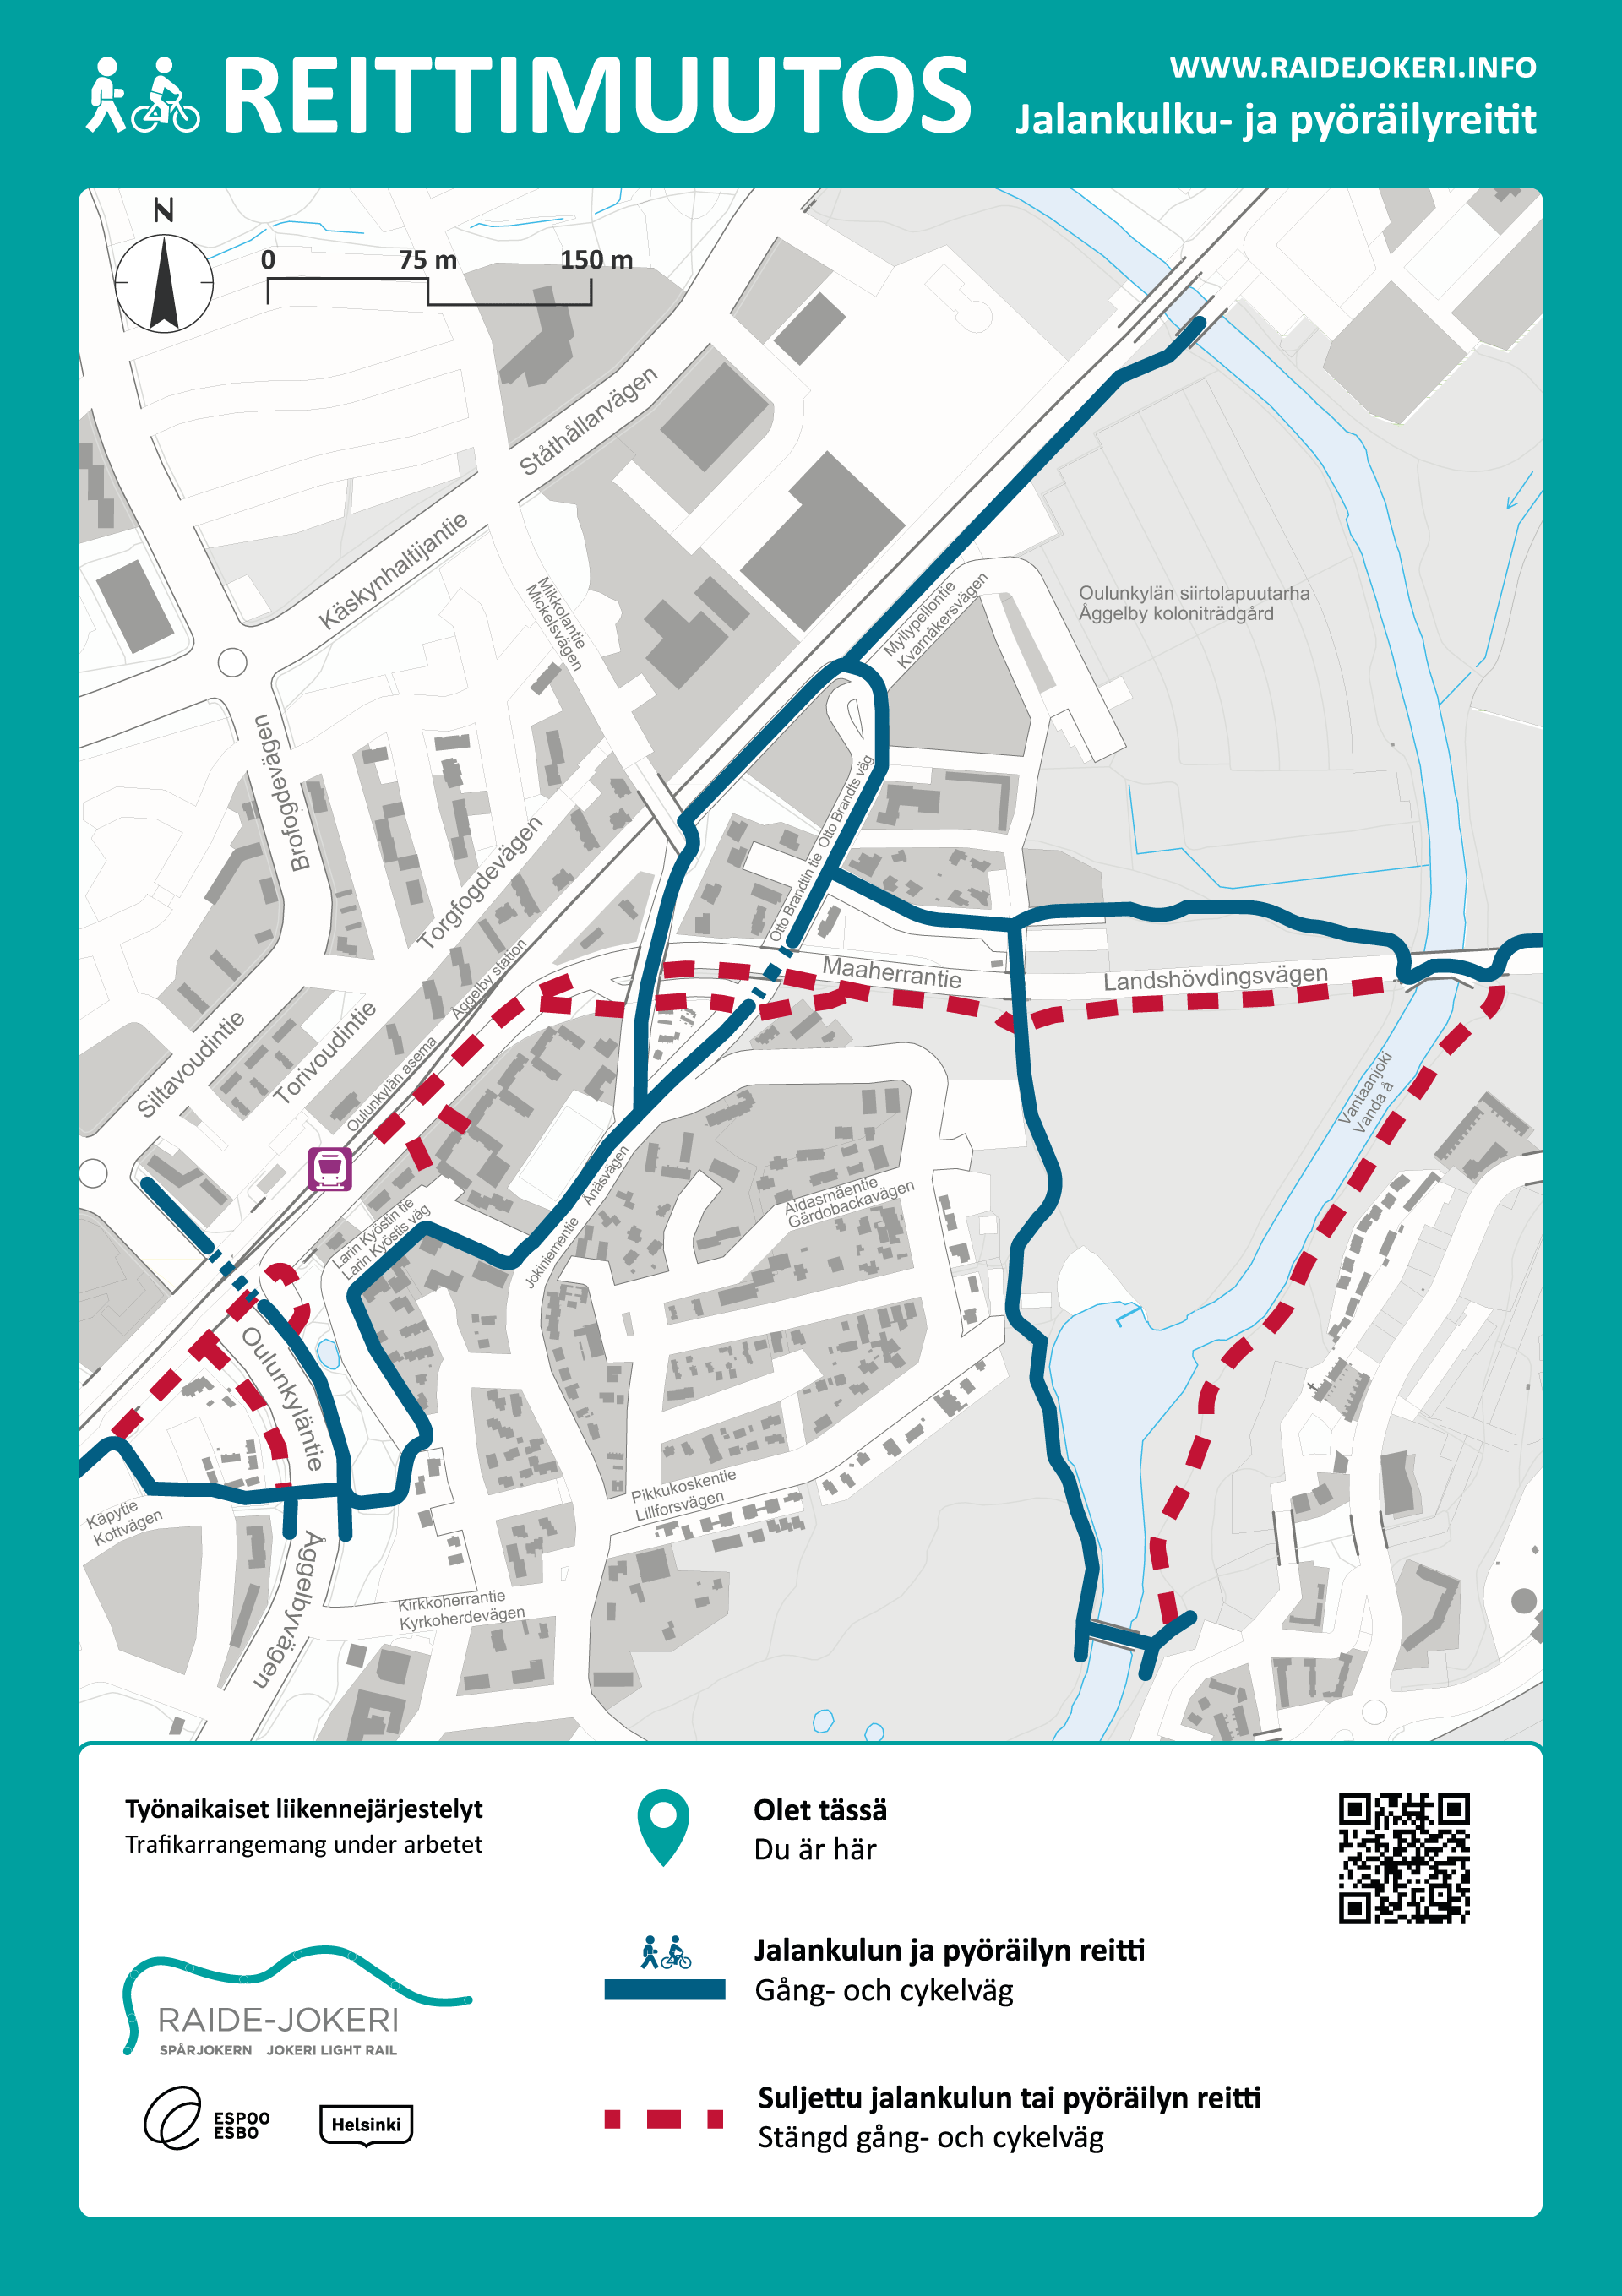 Karttakuva, jossa on esitetty kiertoreitit sekä suljetut jalankulun ja pyöräilyn reitit Maaherrantien länsipäässä.